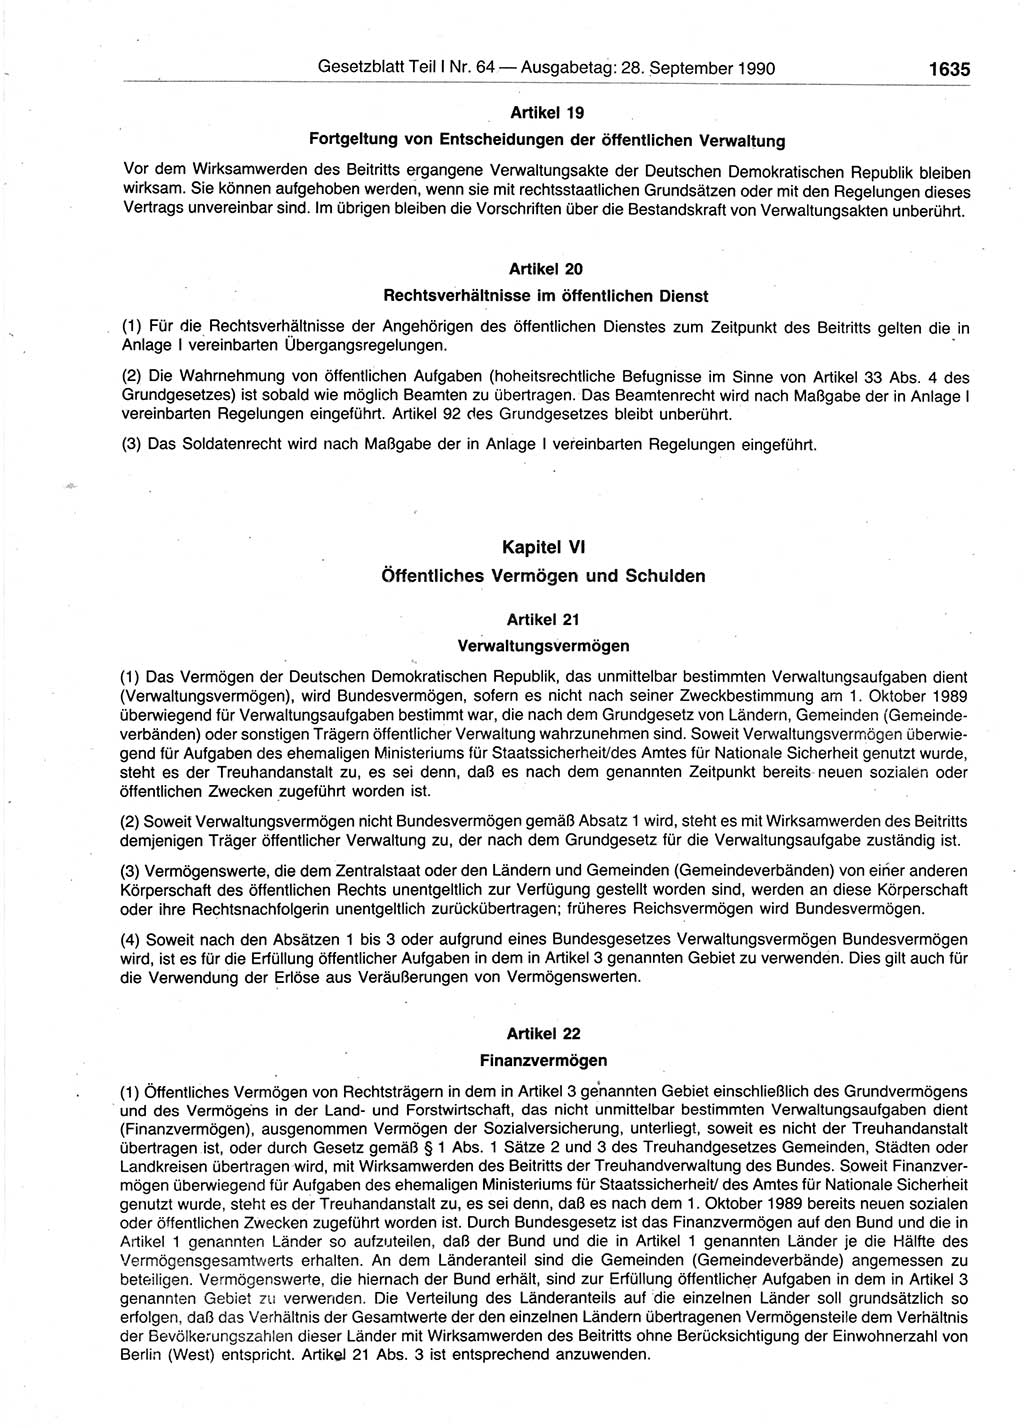 Gesetzblatt (GBl.) der Deutschen Demokratischen Republik (DDR) Teil Ⅰ 1990, Seite 1635 (GBl. DDR Ⅰ 1990, S. 1635)